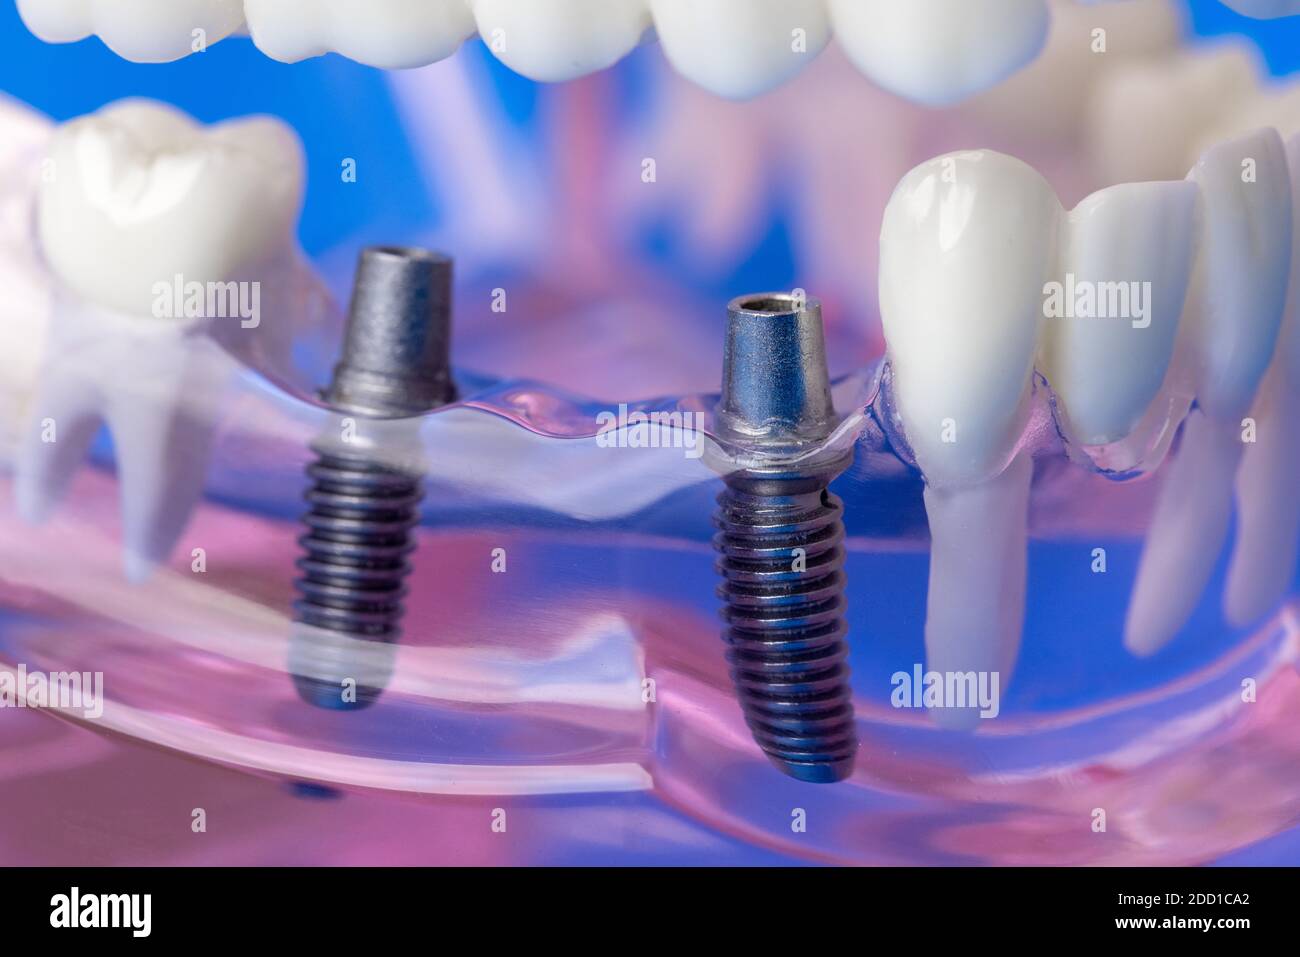 viti a ponte per impianti dentali nel modello a denti di mascella umani Foto Stock